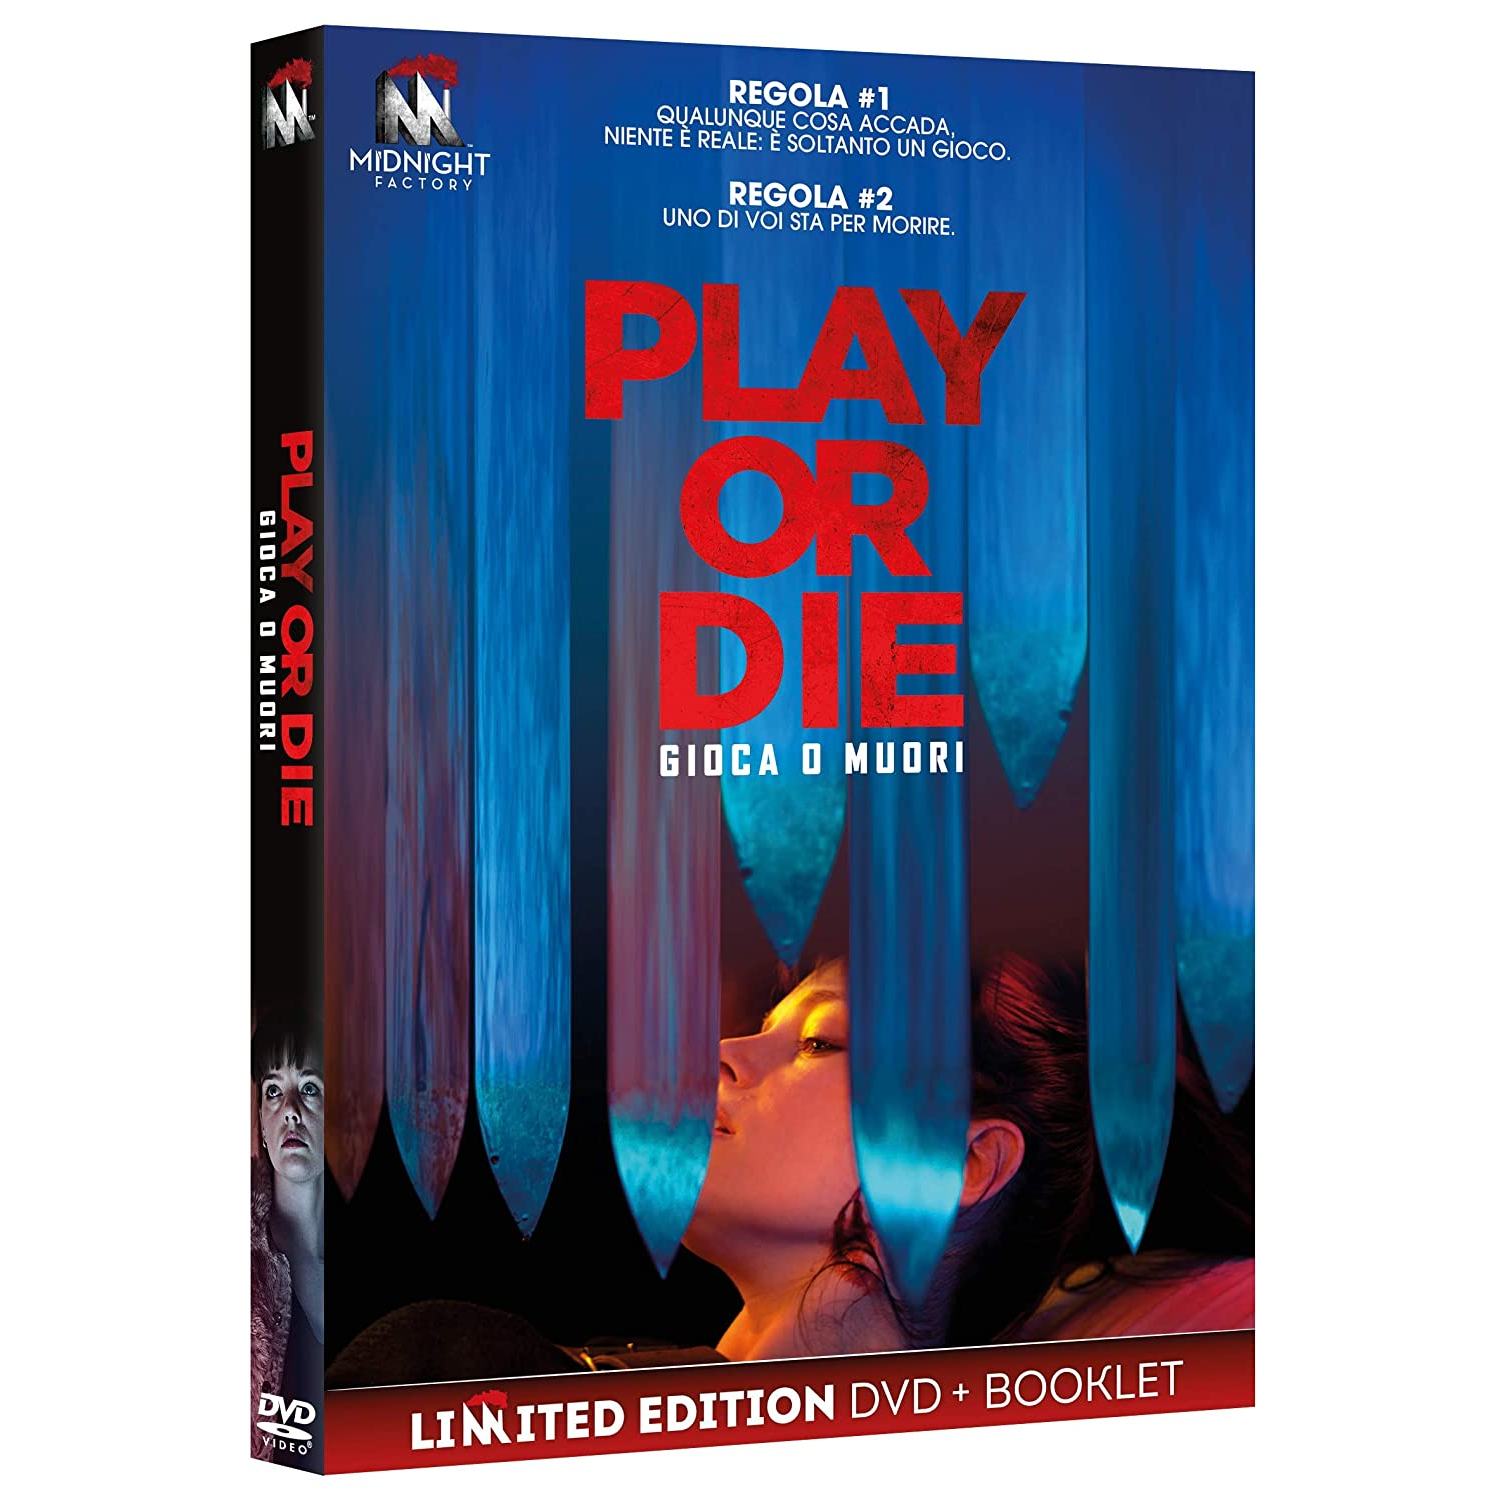 PLAY OR DIE (DVD+BOOKLET)